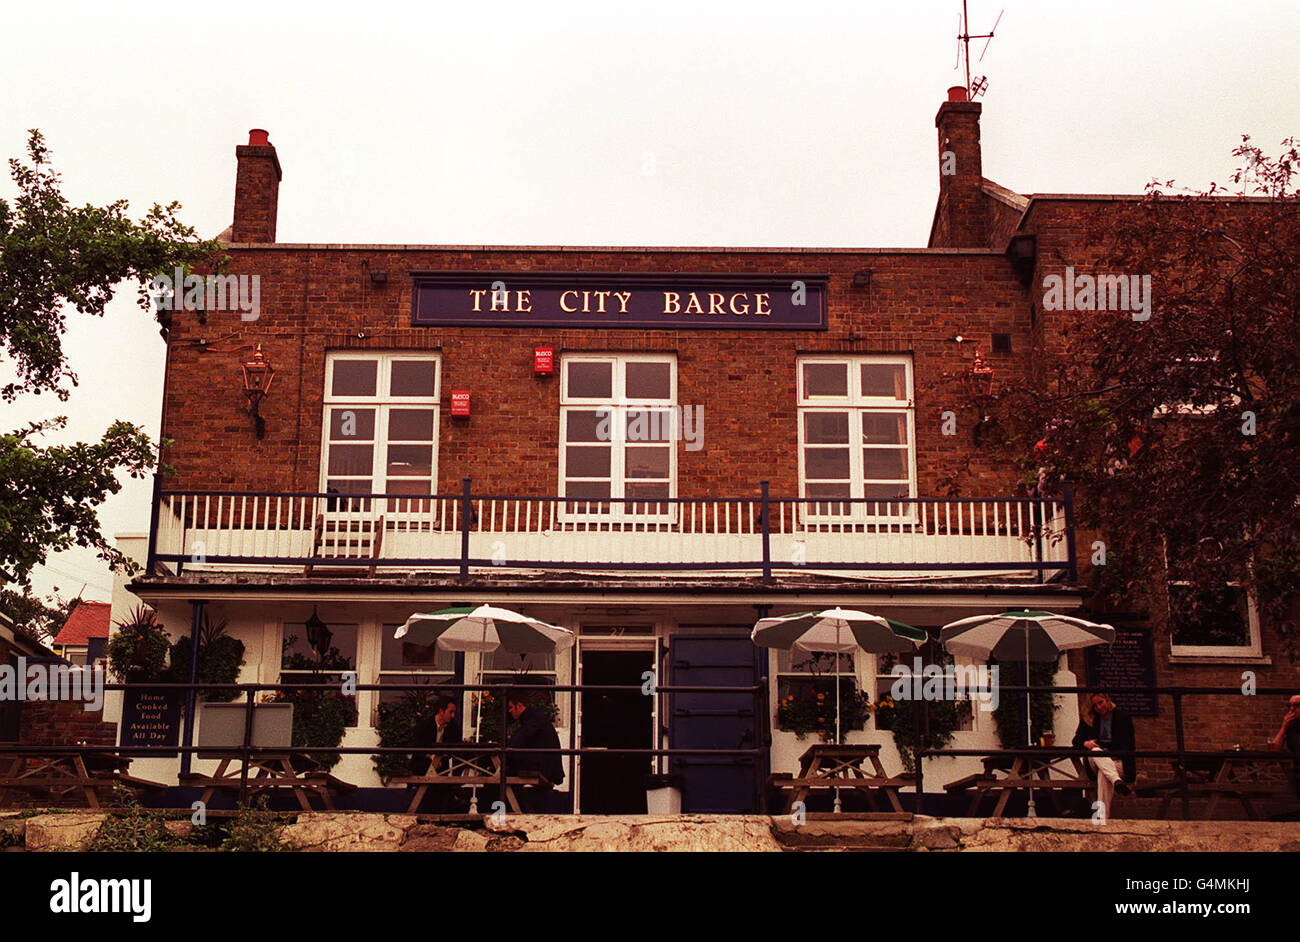 Der Pub City Barge in Chiswick, London, diente als Drehort im Beatles-Film „Help!“. Ringo Starr wurde, nachdem er die Bösewichte des Films gesehen hatte, in den Keller des Pubs geschoben. Der Pub hat keinen. Die Innenaufnahmen wurden in den Twickenham Studios gedreht. * der Film wurde hauptsächlich aus steuerlichen Gründen in Österreich und den Bahamas gedreht, aber einige britische Drehorte wurden verwendet. Stockfoto